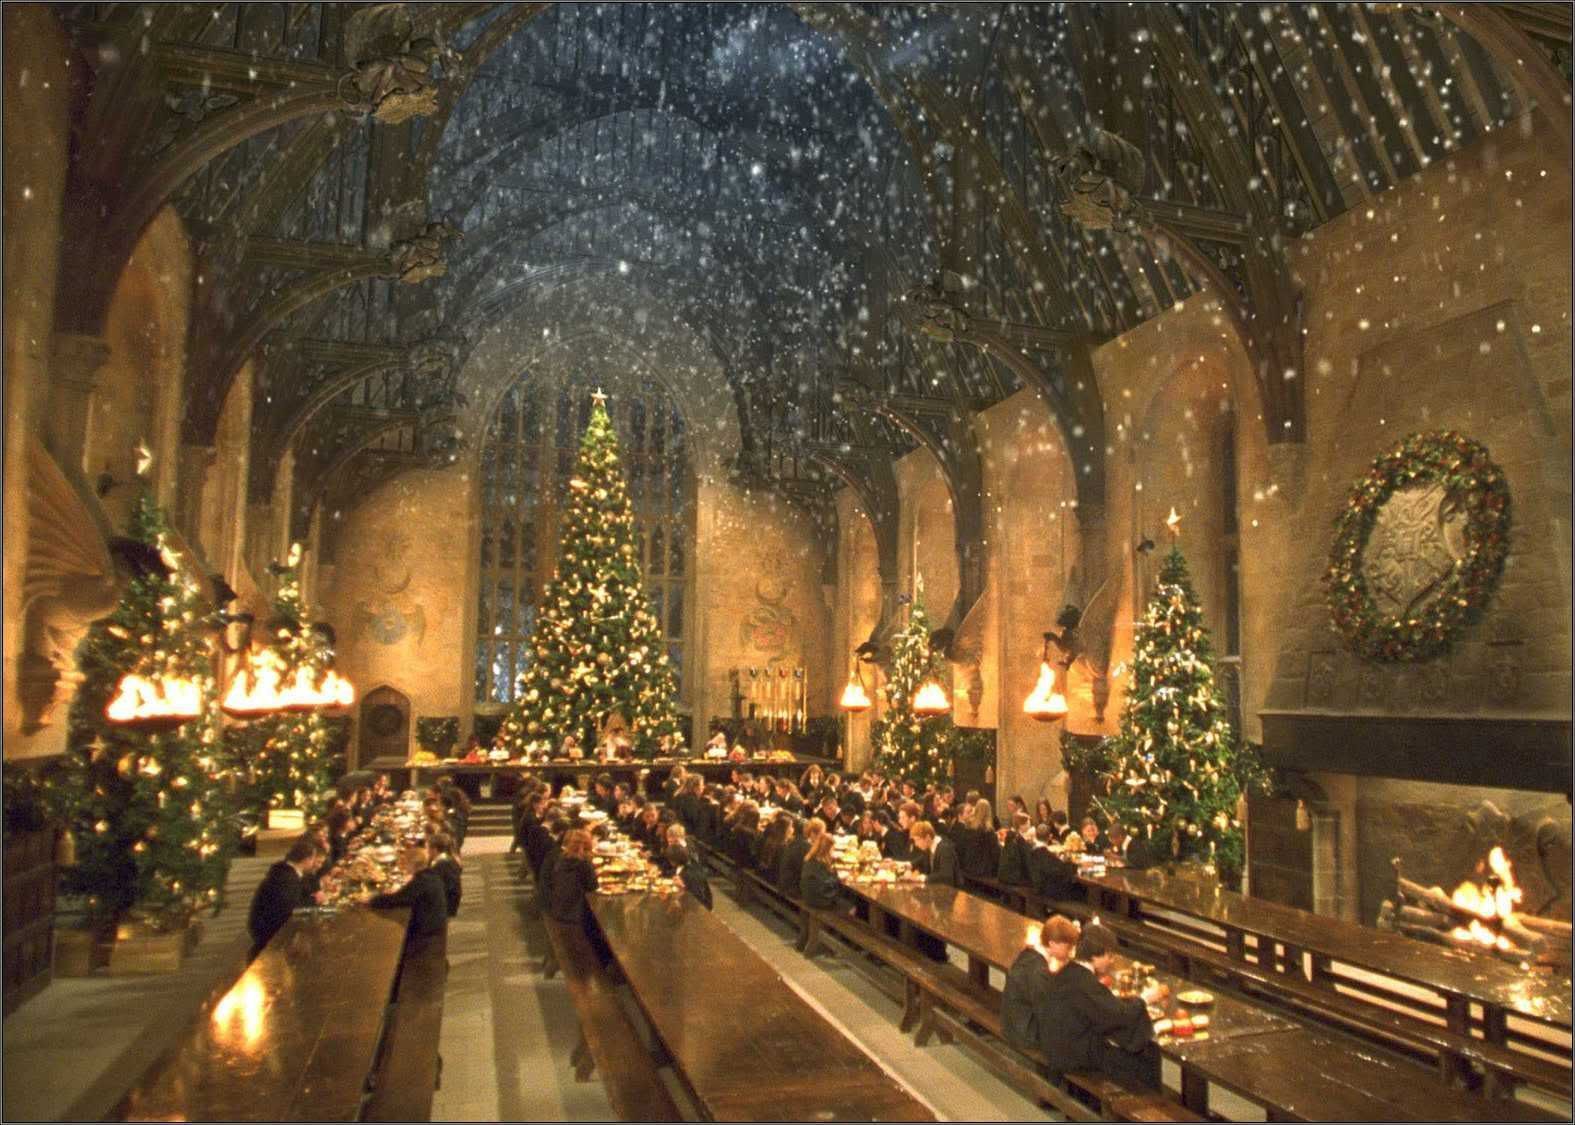 Bạn yêu thích toàn bộ thế giới phù thủy của Harry Potter? Hãy truy cập vào WallpaperDog để tải ngay hình nền Giáng sinh Hogwarts đầy kỳ diệu. Hình ảnh sẽ mang đến cho bạn không khí tươi vui và ấm áp của mùa Giáng sinh, cùng với cảm giác ngập tràn niềm vui khi thưởng thức bữa tiệc tại phòng ăn lớn Hogwarts.